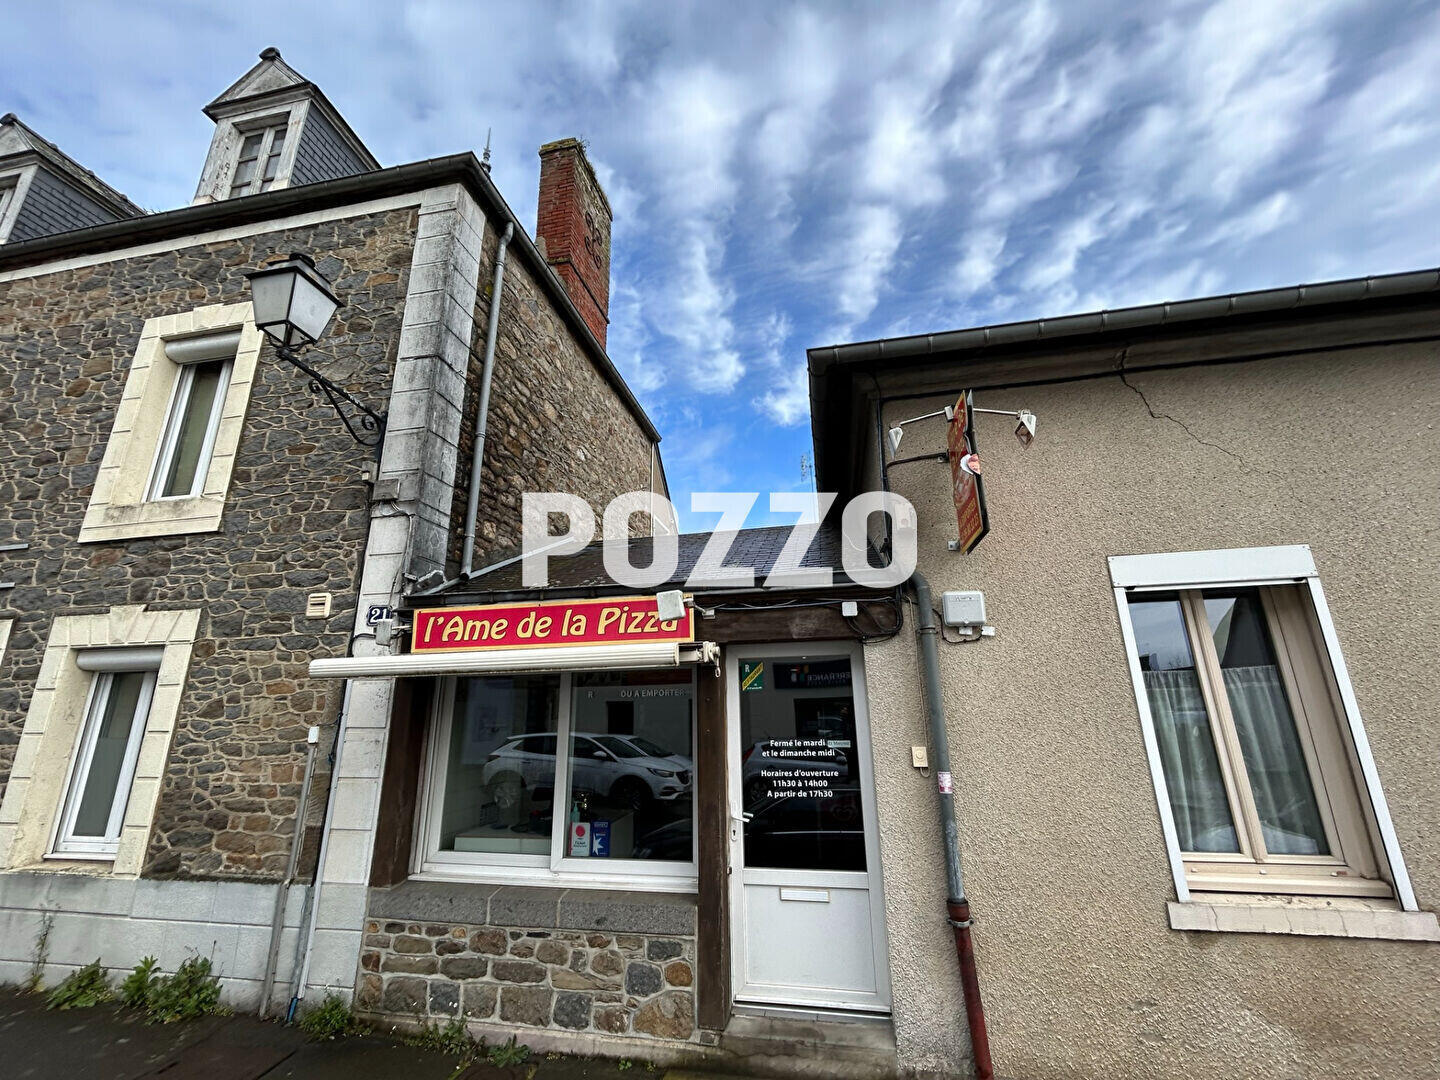 A vendre FDC pizzeria à emporter proche Dol